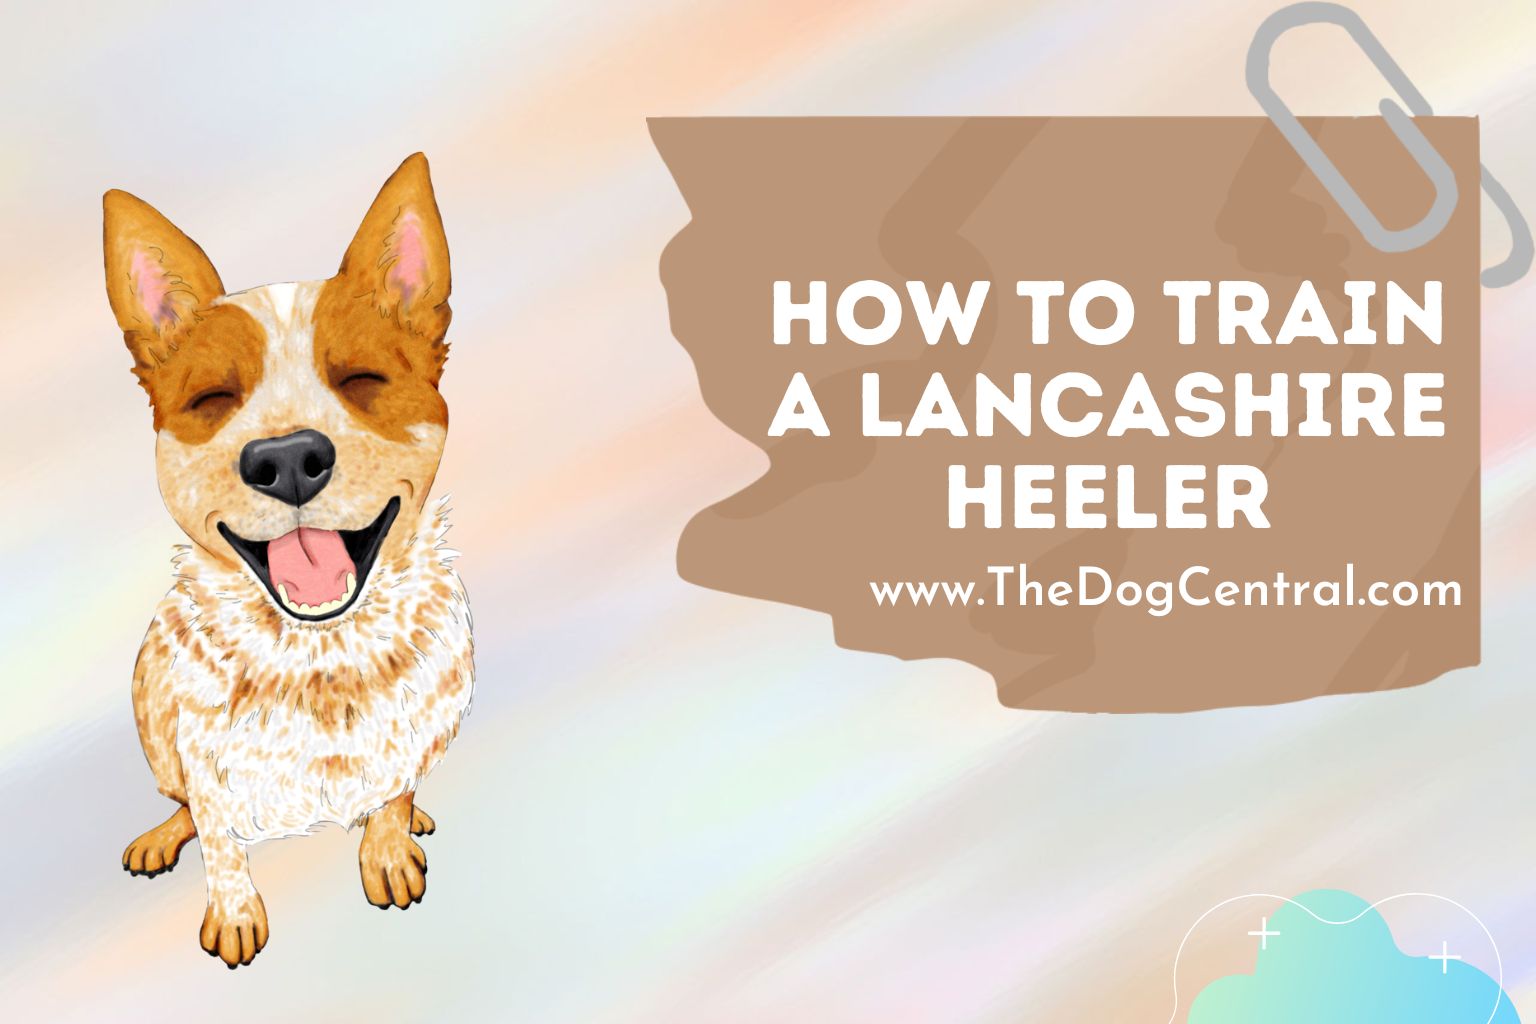 How to Train a Lancashire Heeler